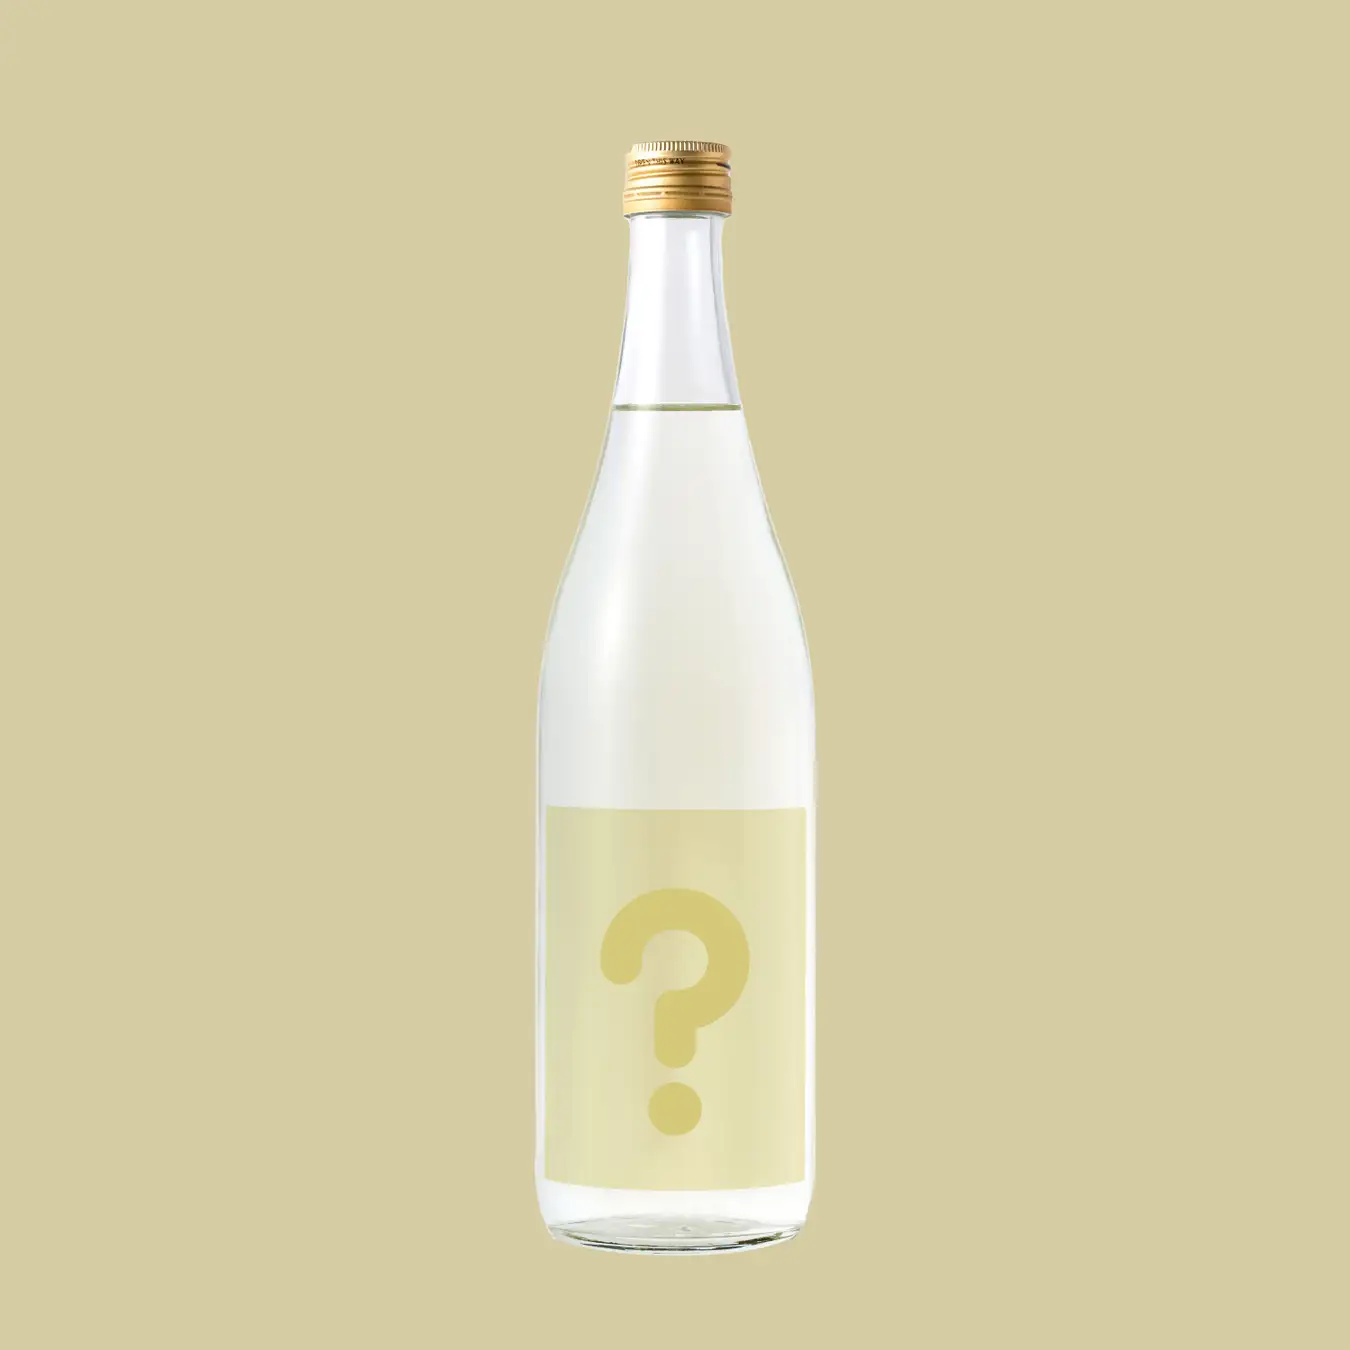 ボトルで謎解きができる日本酒が登場 限定プラン購入者全員にプレゼント